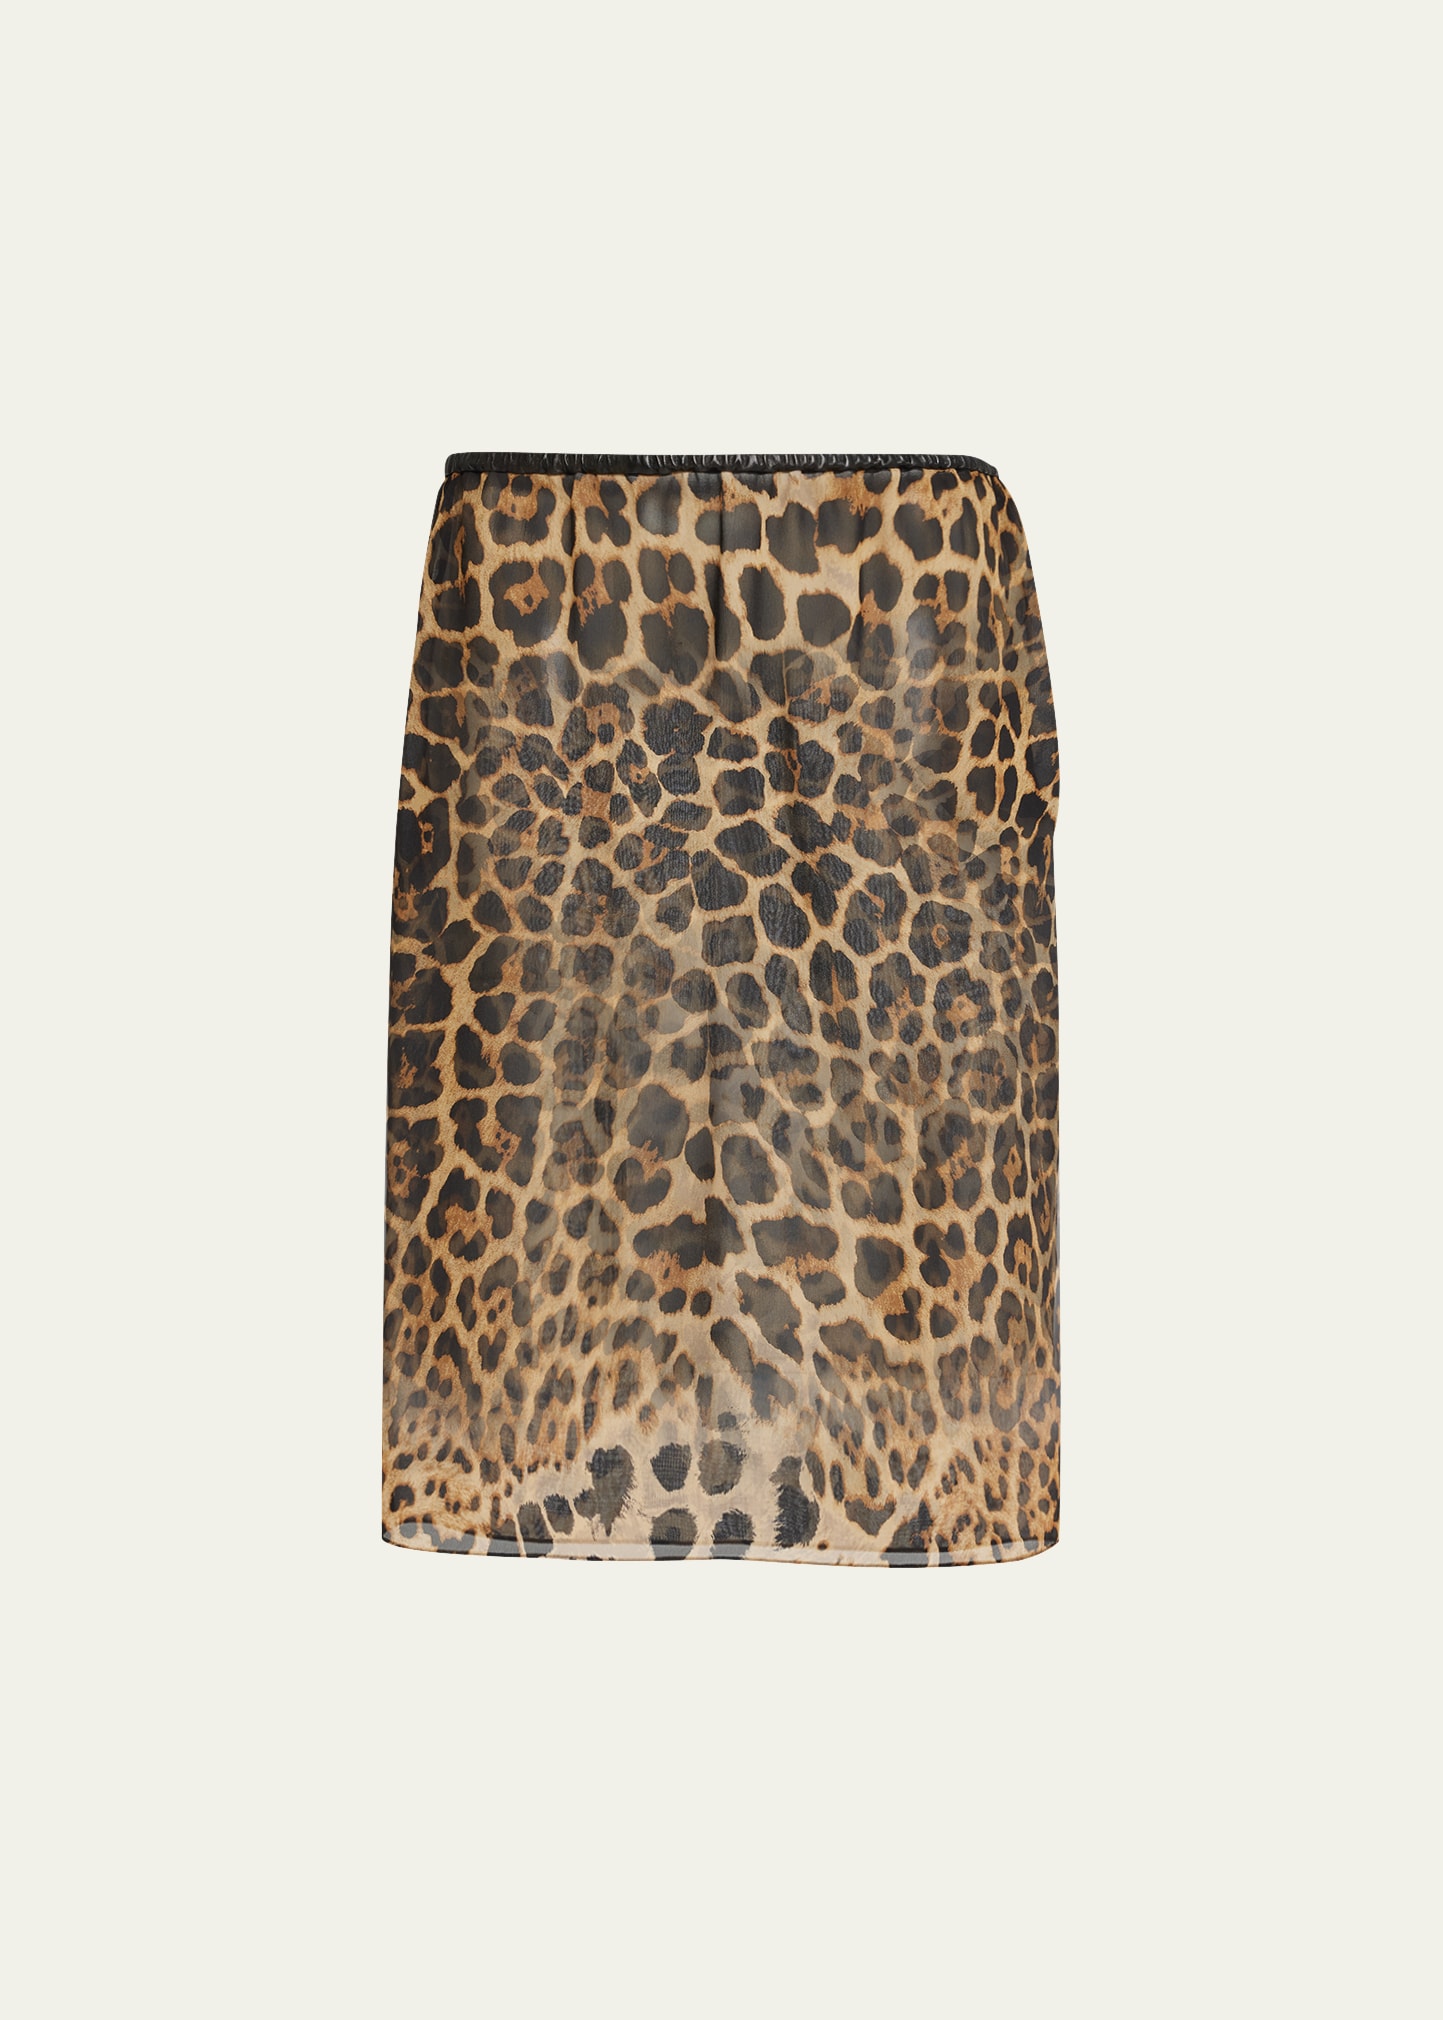 Sheer Overlay Leopard-Print Skirt